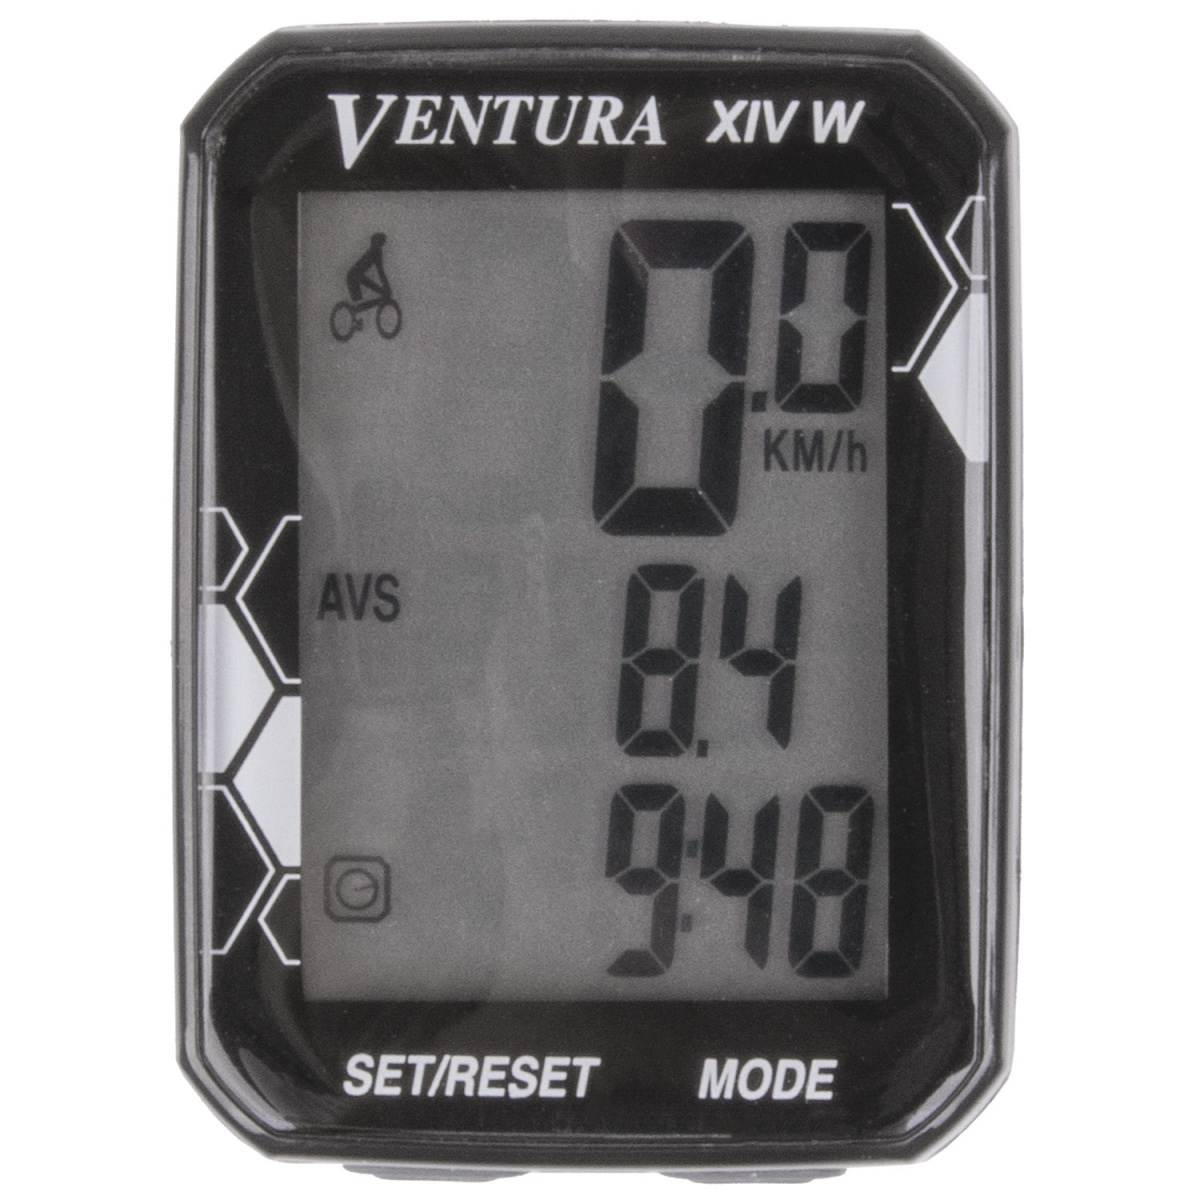 Велокомп 14 функций, VENTURA XIV W, беспровод, 3-х строчный дисплей, чёрный, 5-244361